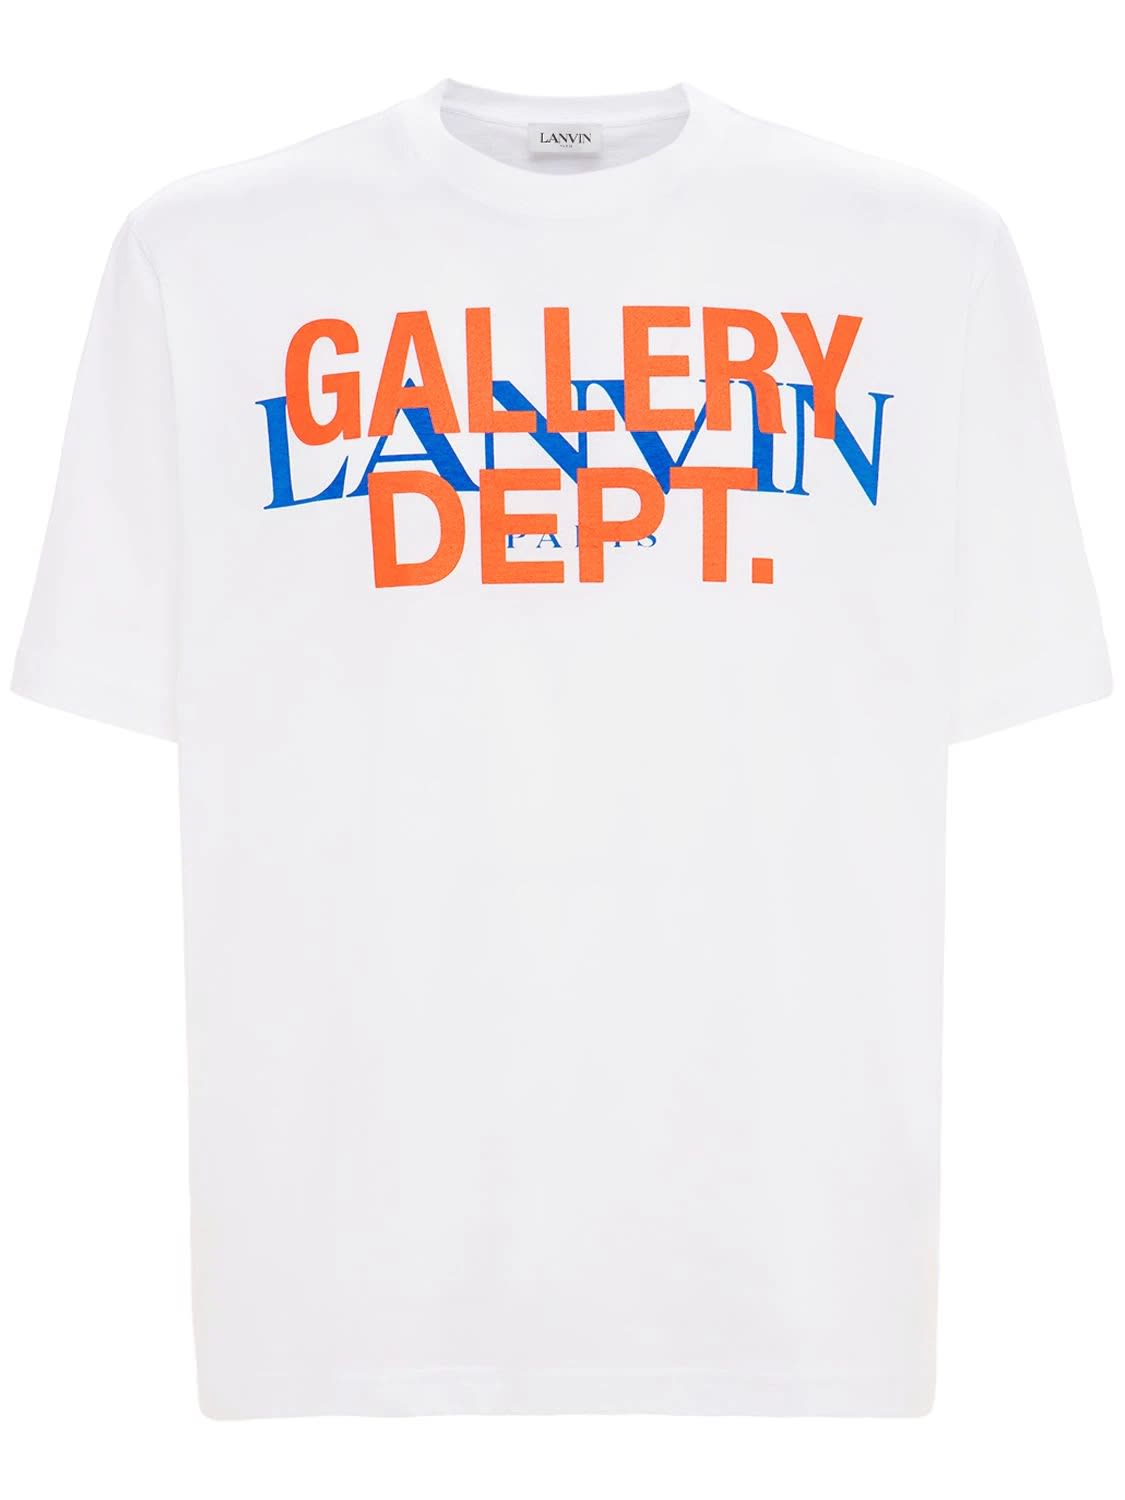 LANVIN x GALLERY DEPT. Tシャツ - ファッション